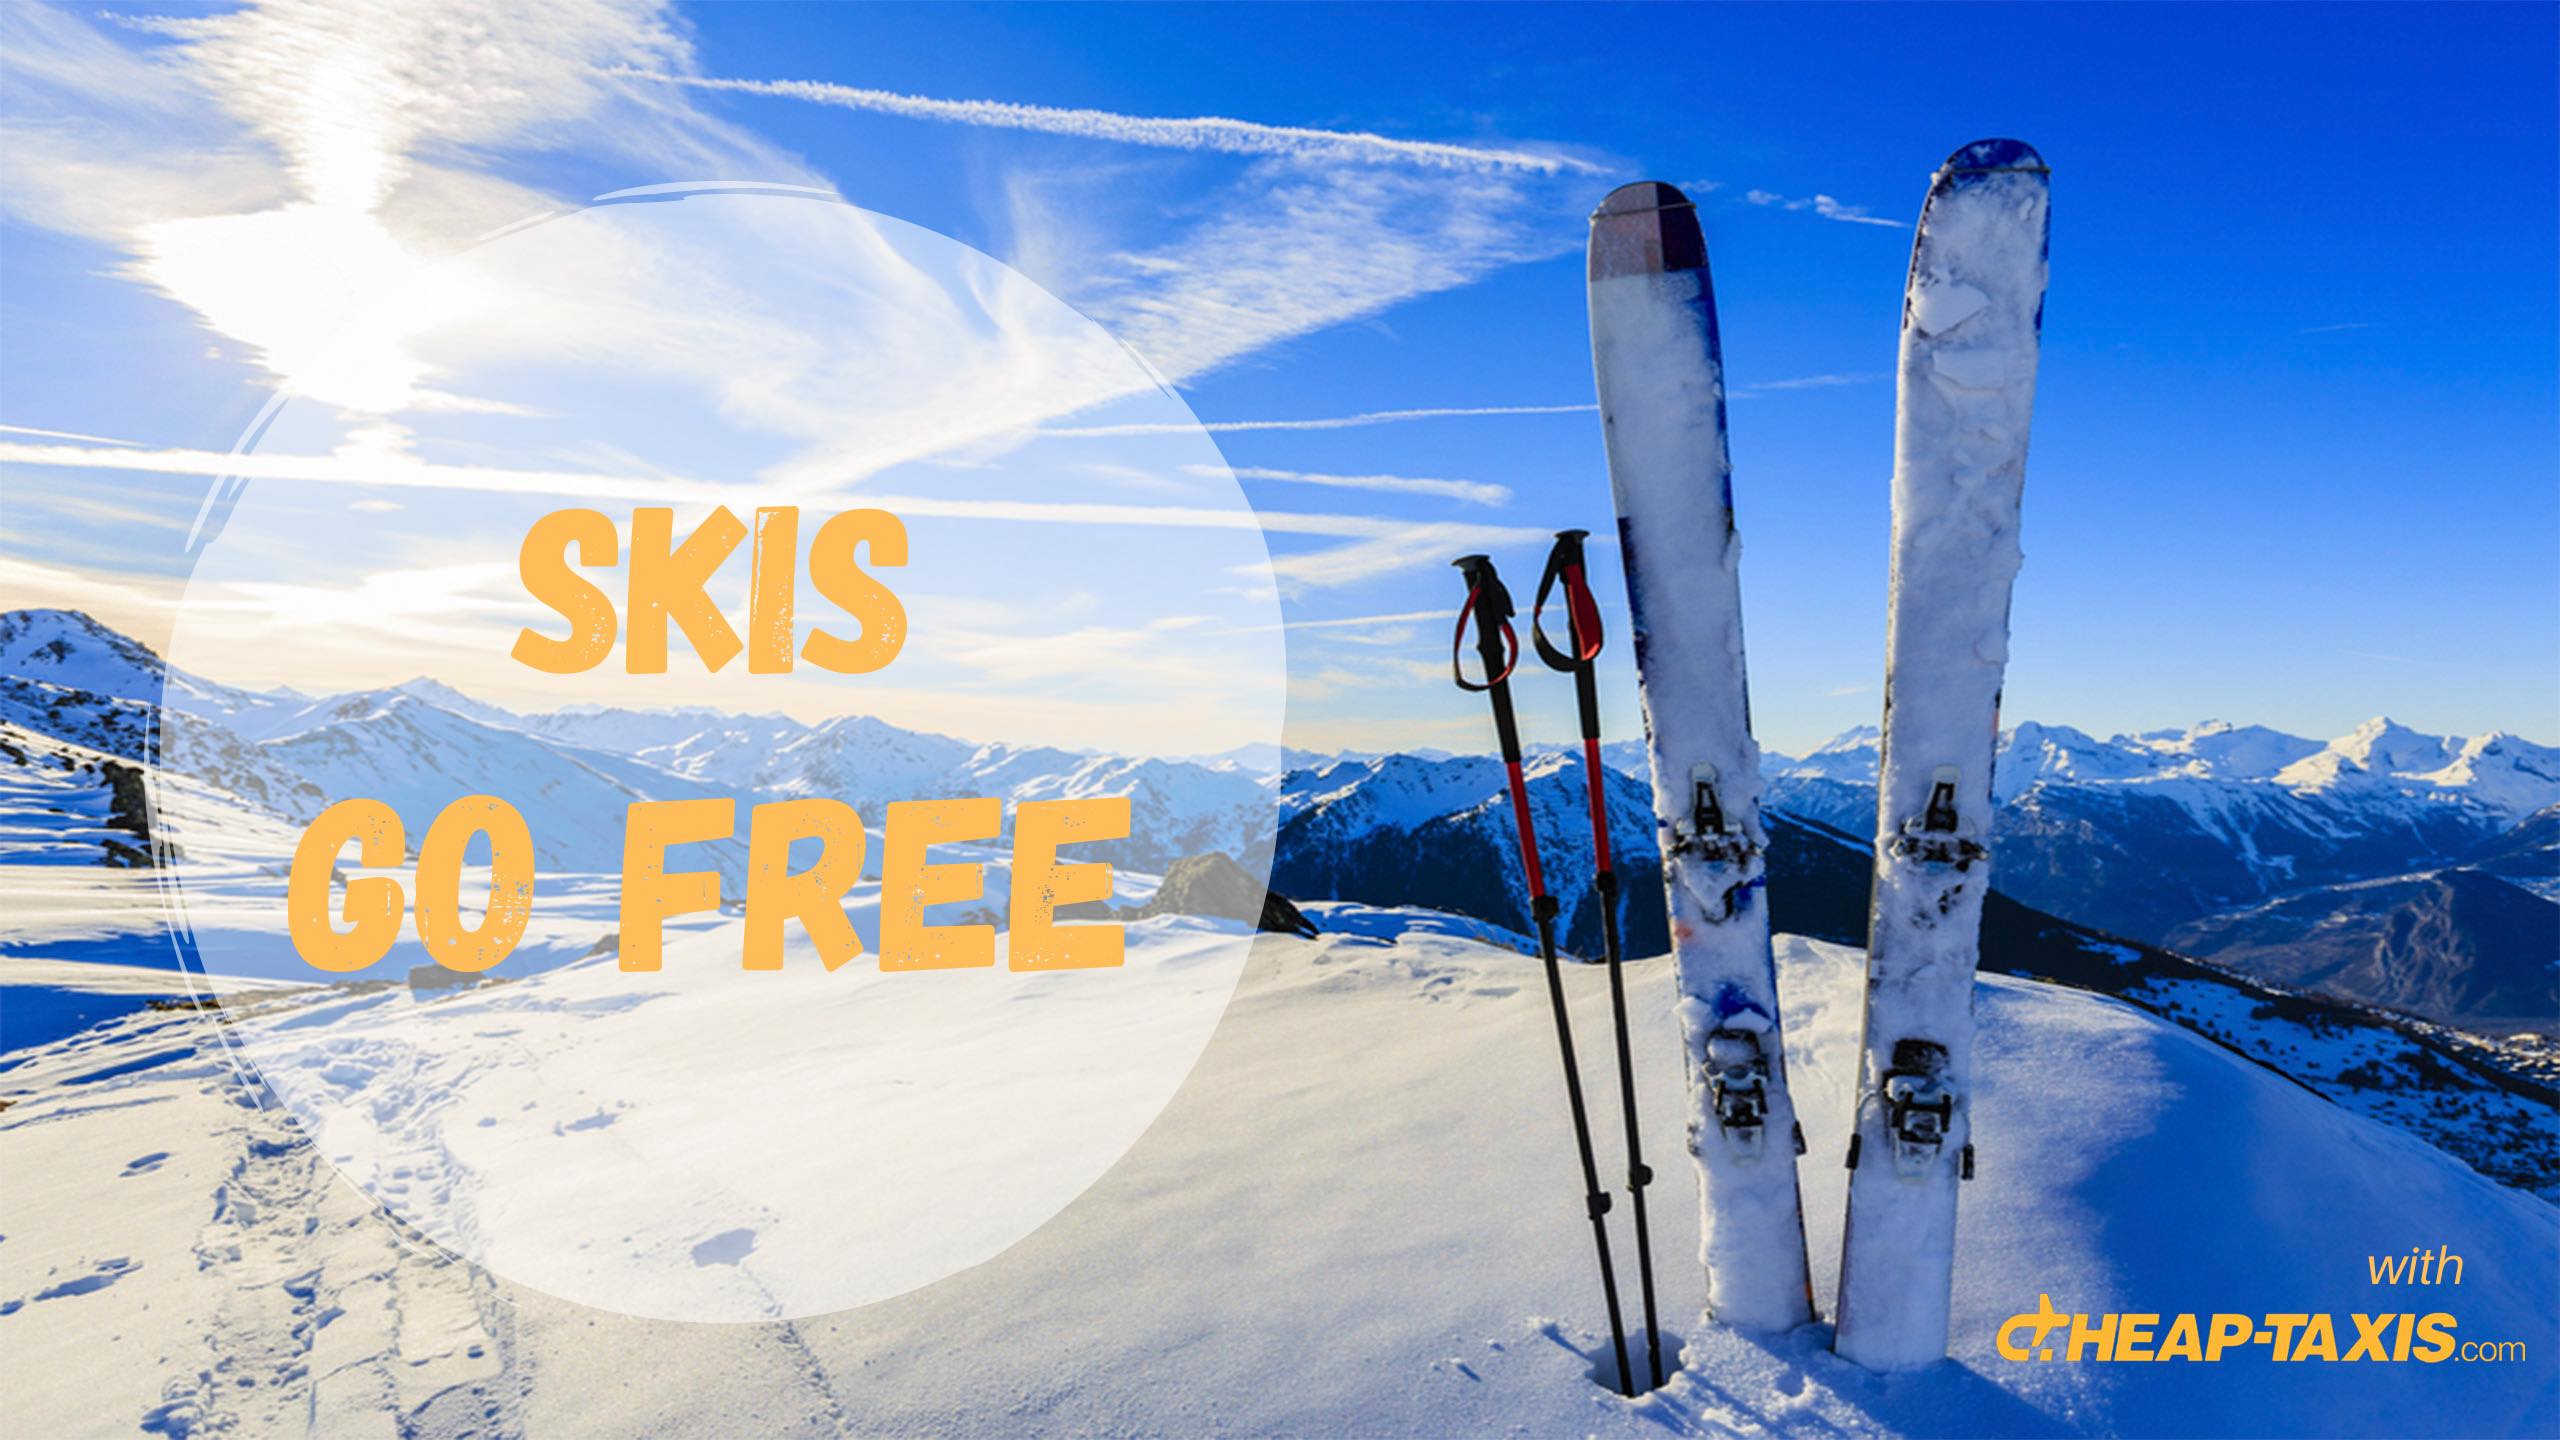 Zurich skis go free